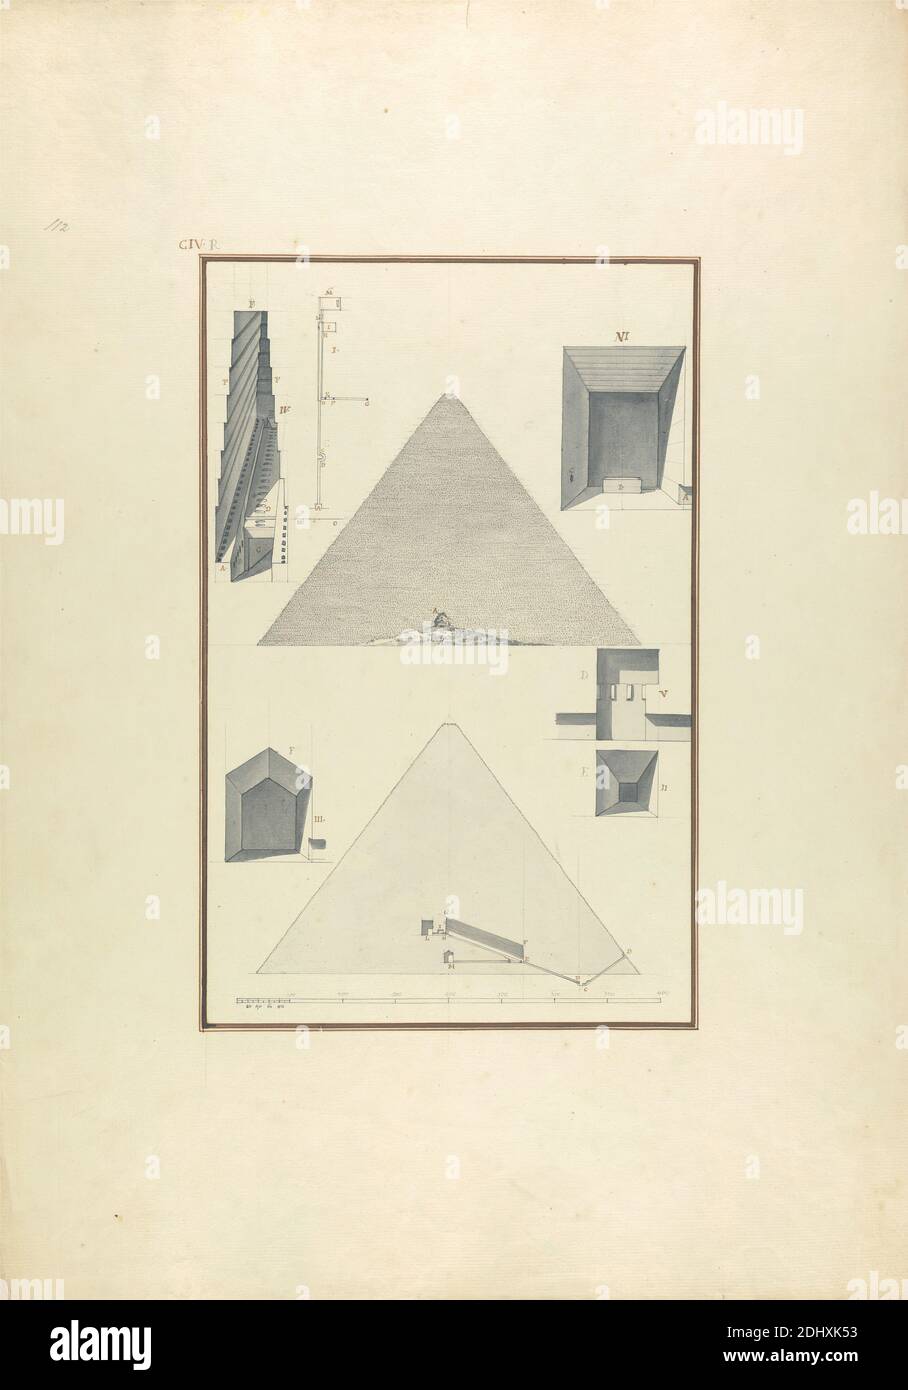 Ansicht, Querschnitt und andere Details von Cheops Pyramide in Giza, Giovanni Battista Borra, 1713–1770, Italienisch, ca. 1750, Grauwäsche mit schwarzer und brauner Tinte über Graphit auf mäßig dickem, mäßig strukturiertem, beigefarbenem Papier, Blatt: 21 1/4 x 14 7/8 Zoll (54 x 37.8 cm) und Bild: 12 3/8 x 8 Zoll (31.5 x 20.3 cm), architektonisches Thema, Querschnitt, Höhe (Zeichnung), Pyramide (Grab), Maßstab (Regel), Grab, Ägypten, Grenze, Gizeh Nekropolis, große Pyramide von Gizeh, Matruh Stockfoto